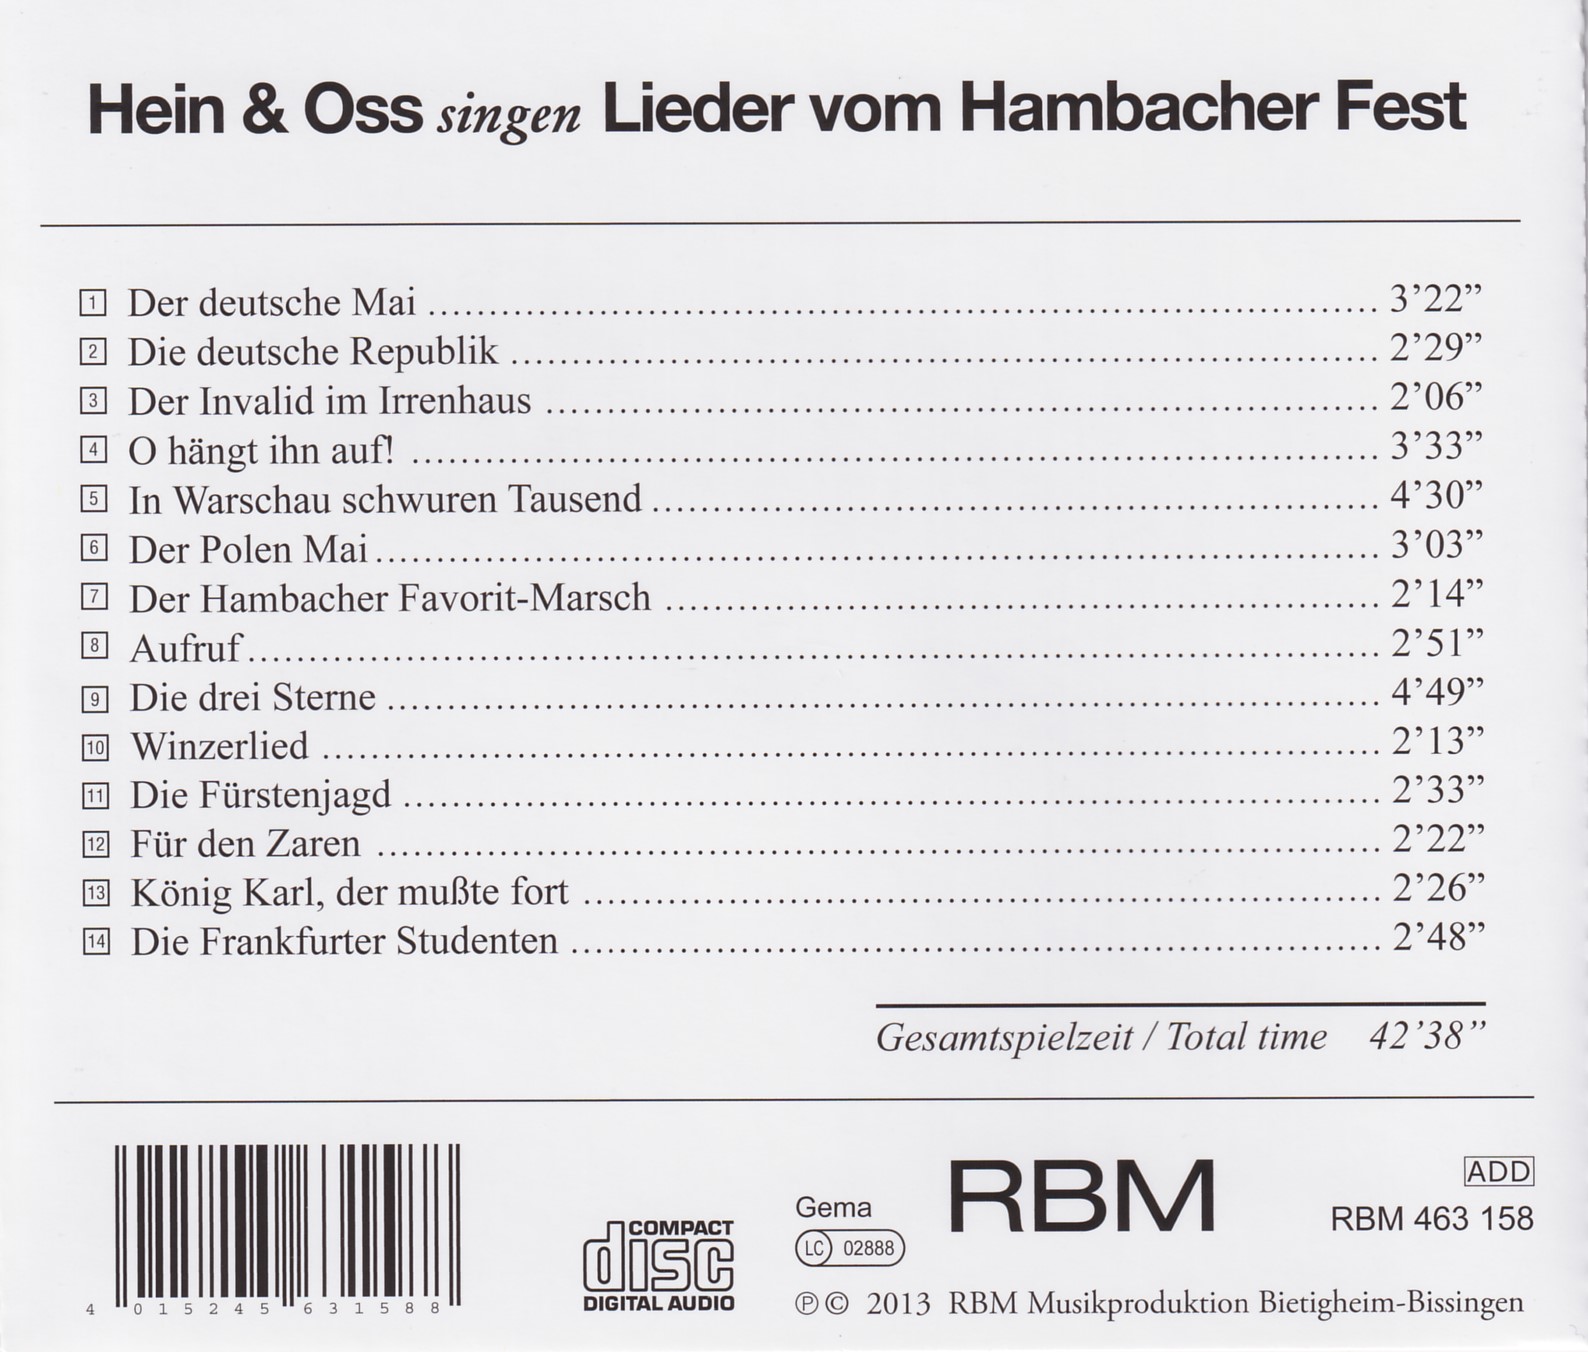 Hein & Oss singen Lieder vom Hambacher Fest